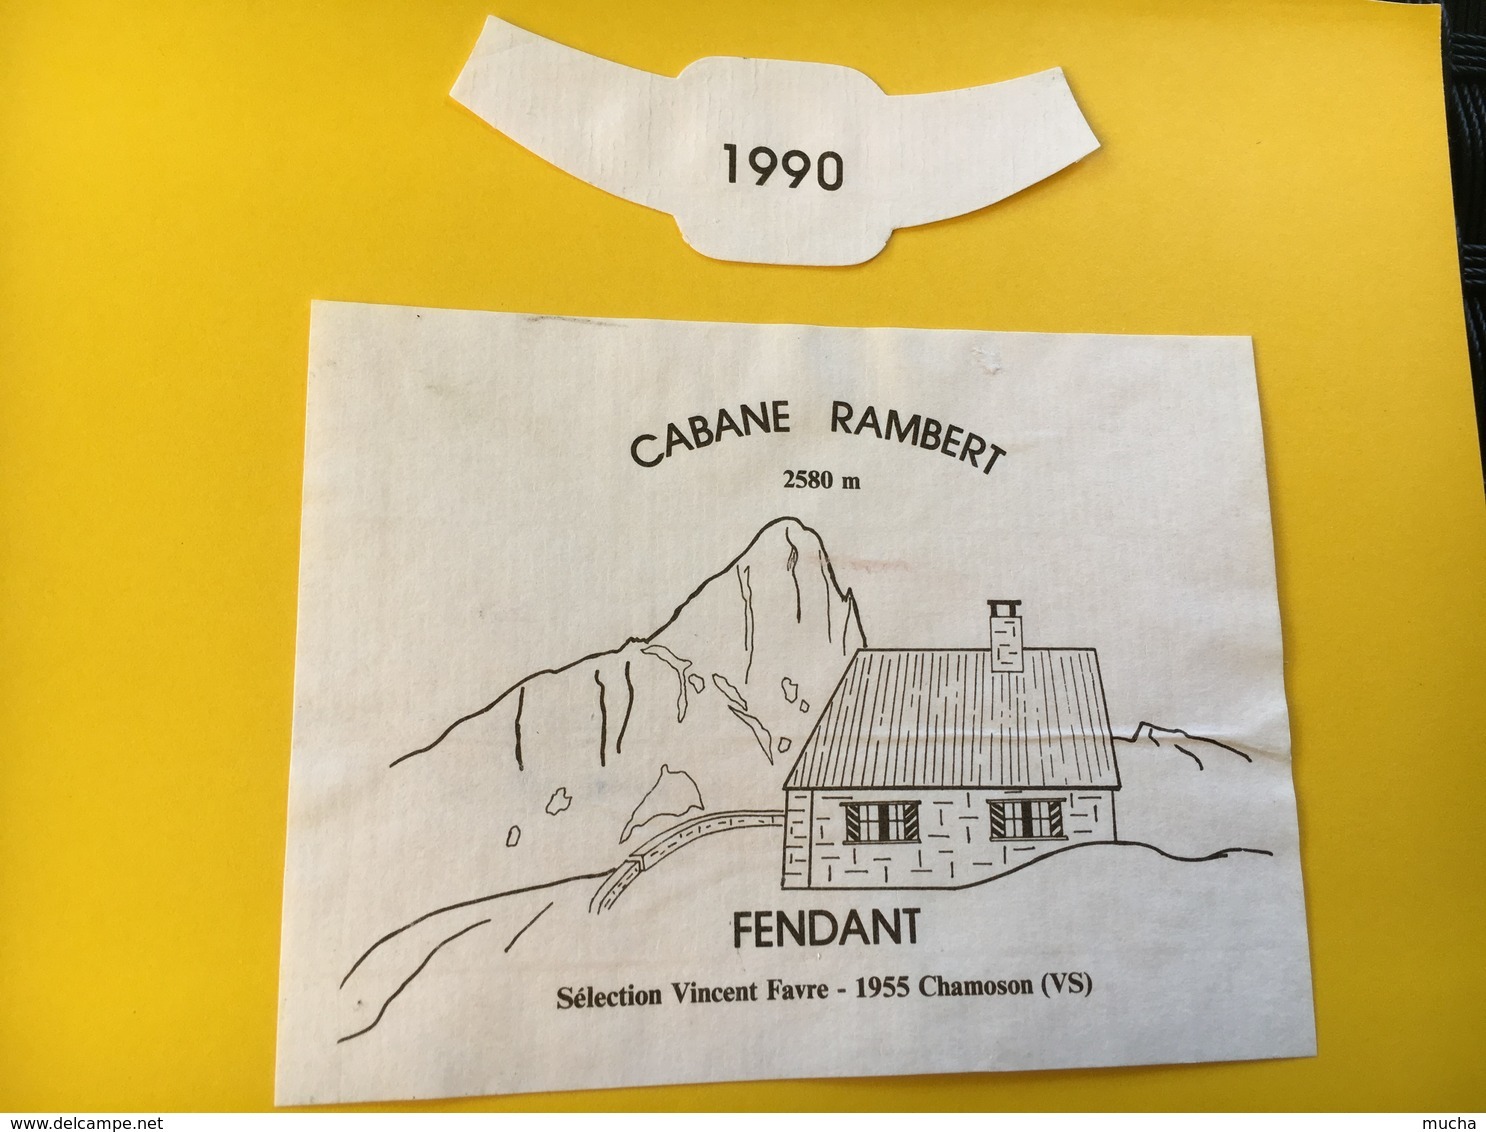 8799 - Cabane Rambert 2580 M. Suisse Fendant  1990 Vincent Favre - Montagnes